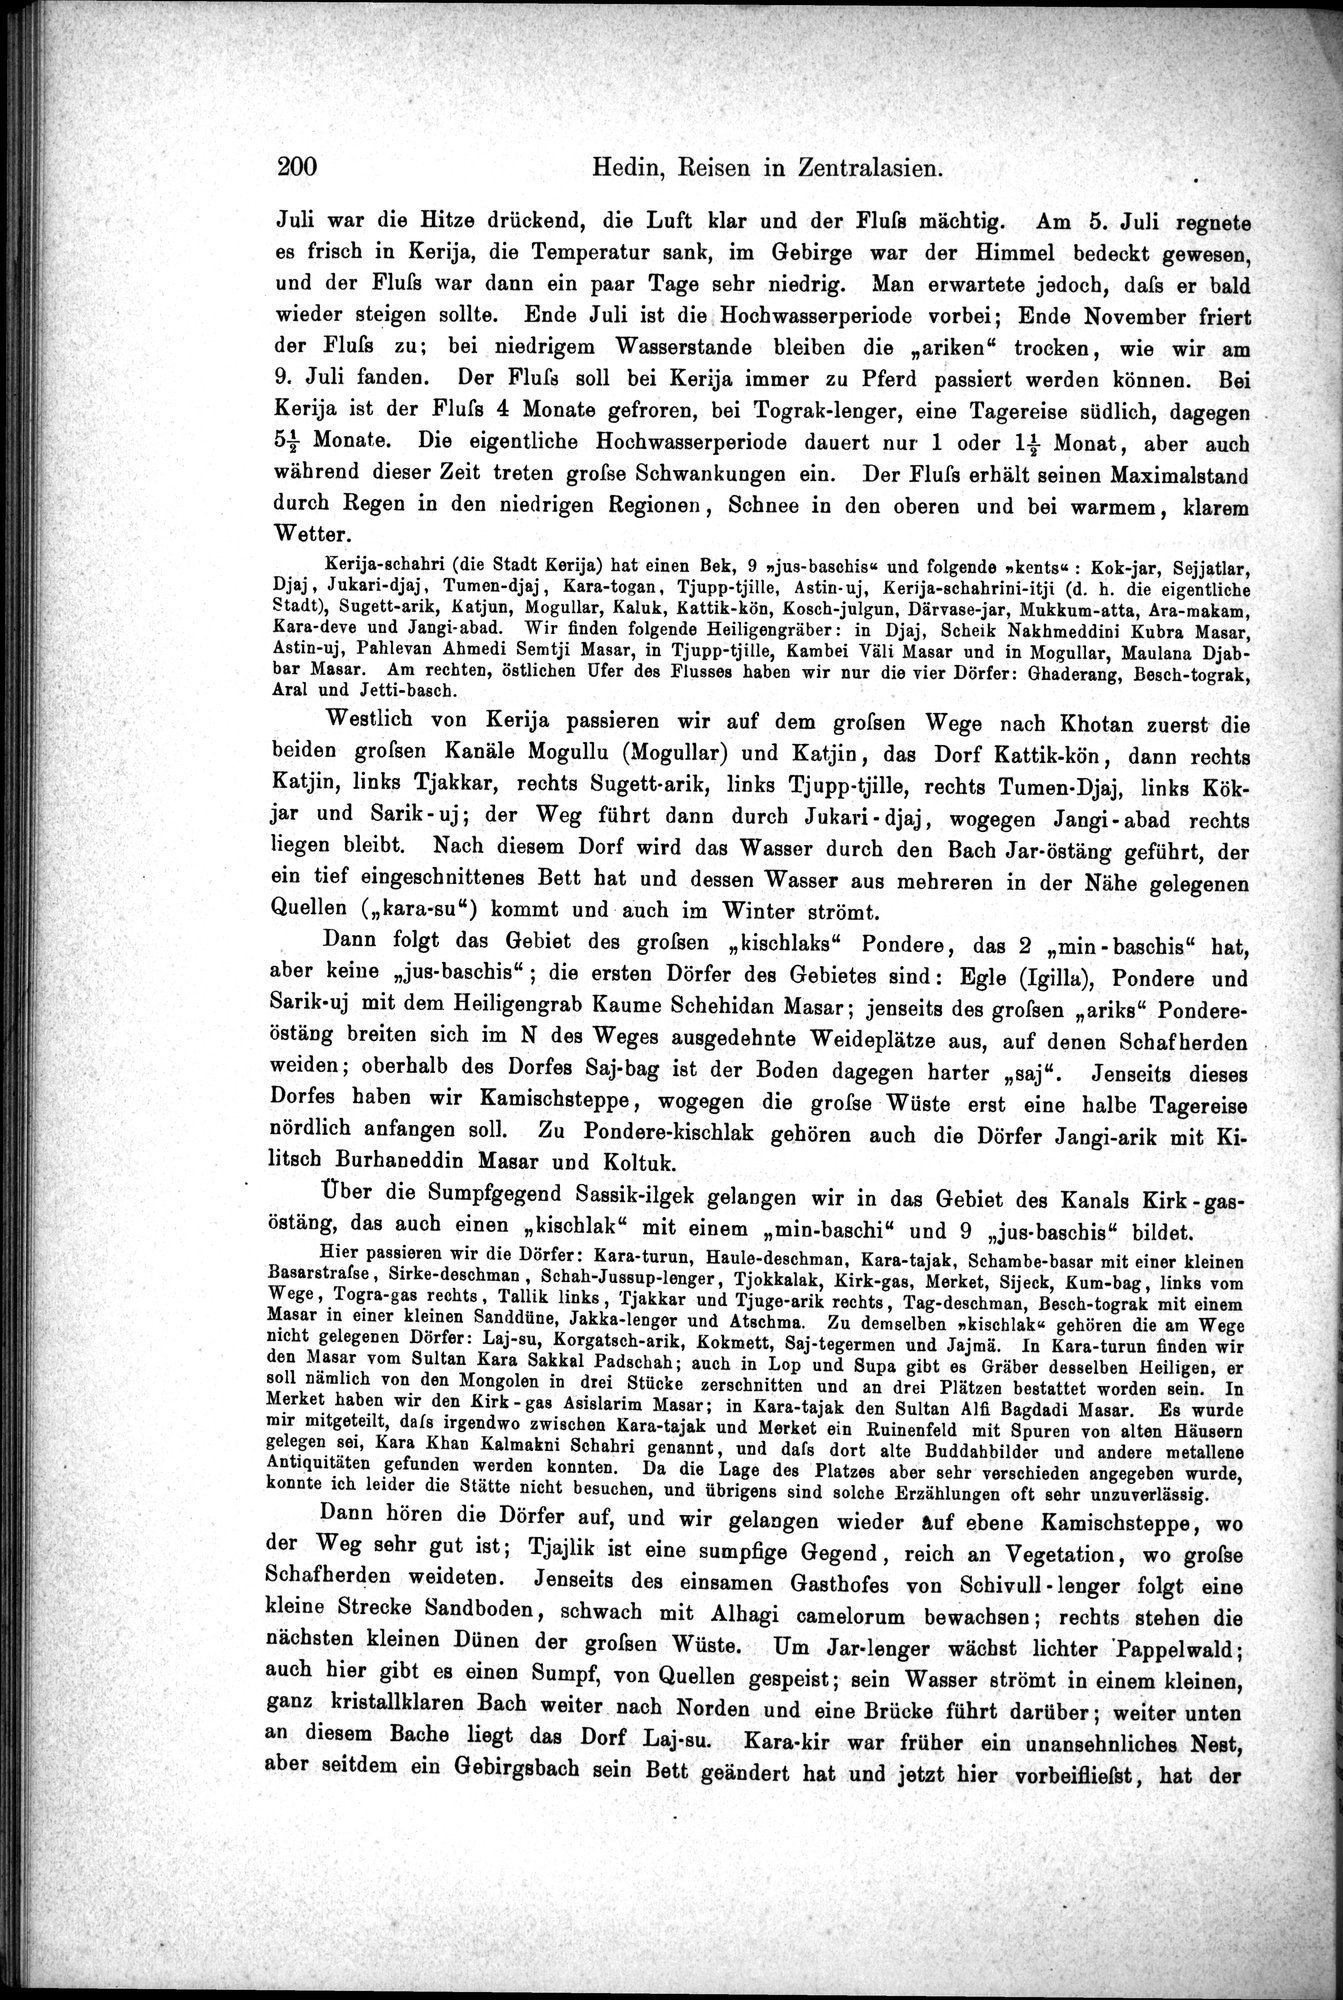 Die Geographische-Wissenschaftlichen Ergebnisse meiner Reisen in Zentralasien, 1894-1897 : vol.1 / Page 212 (Grayscale High Resolution Image)